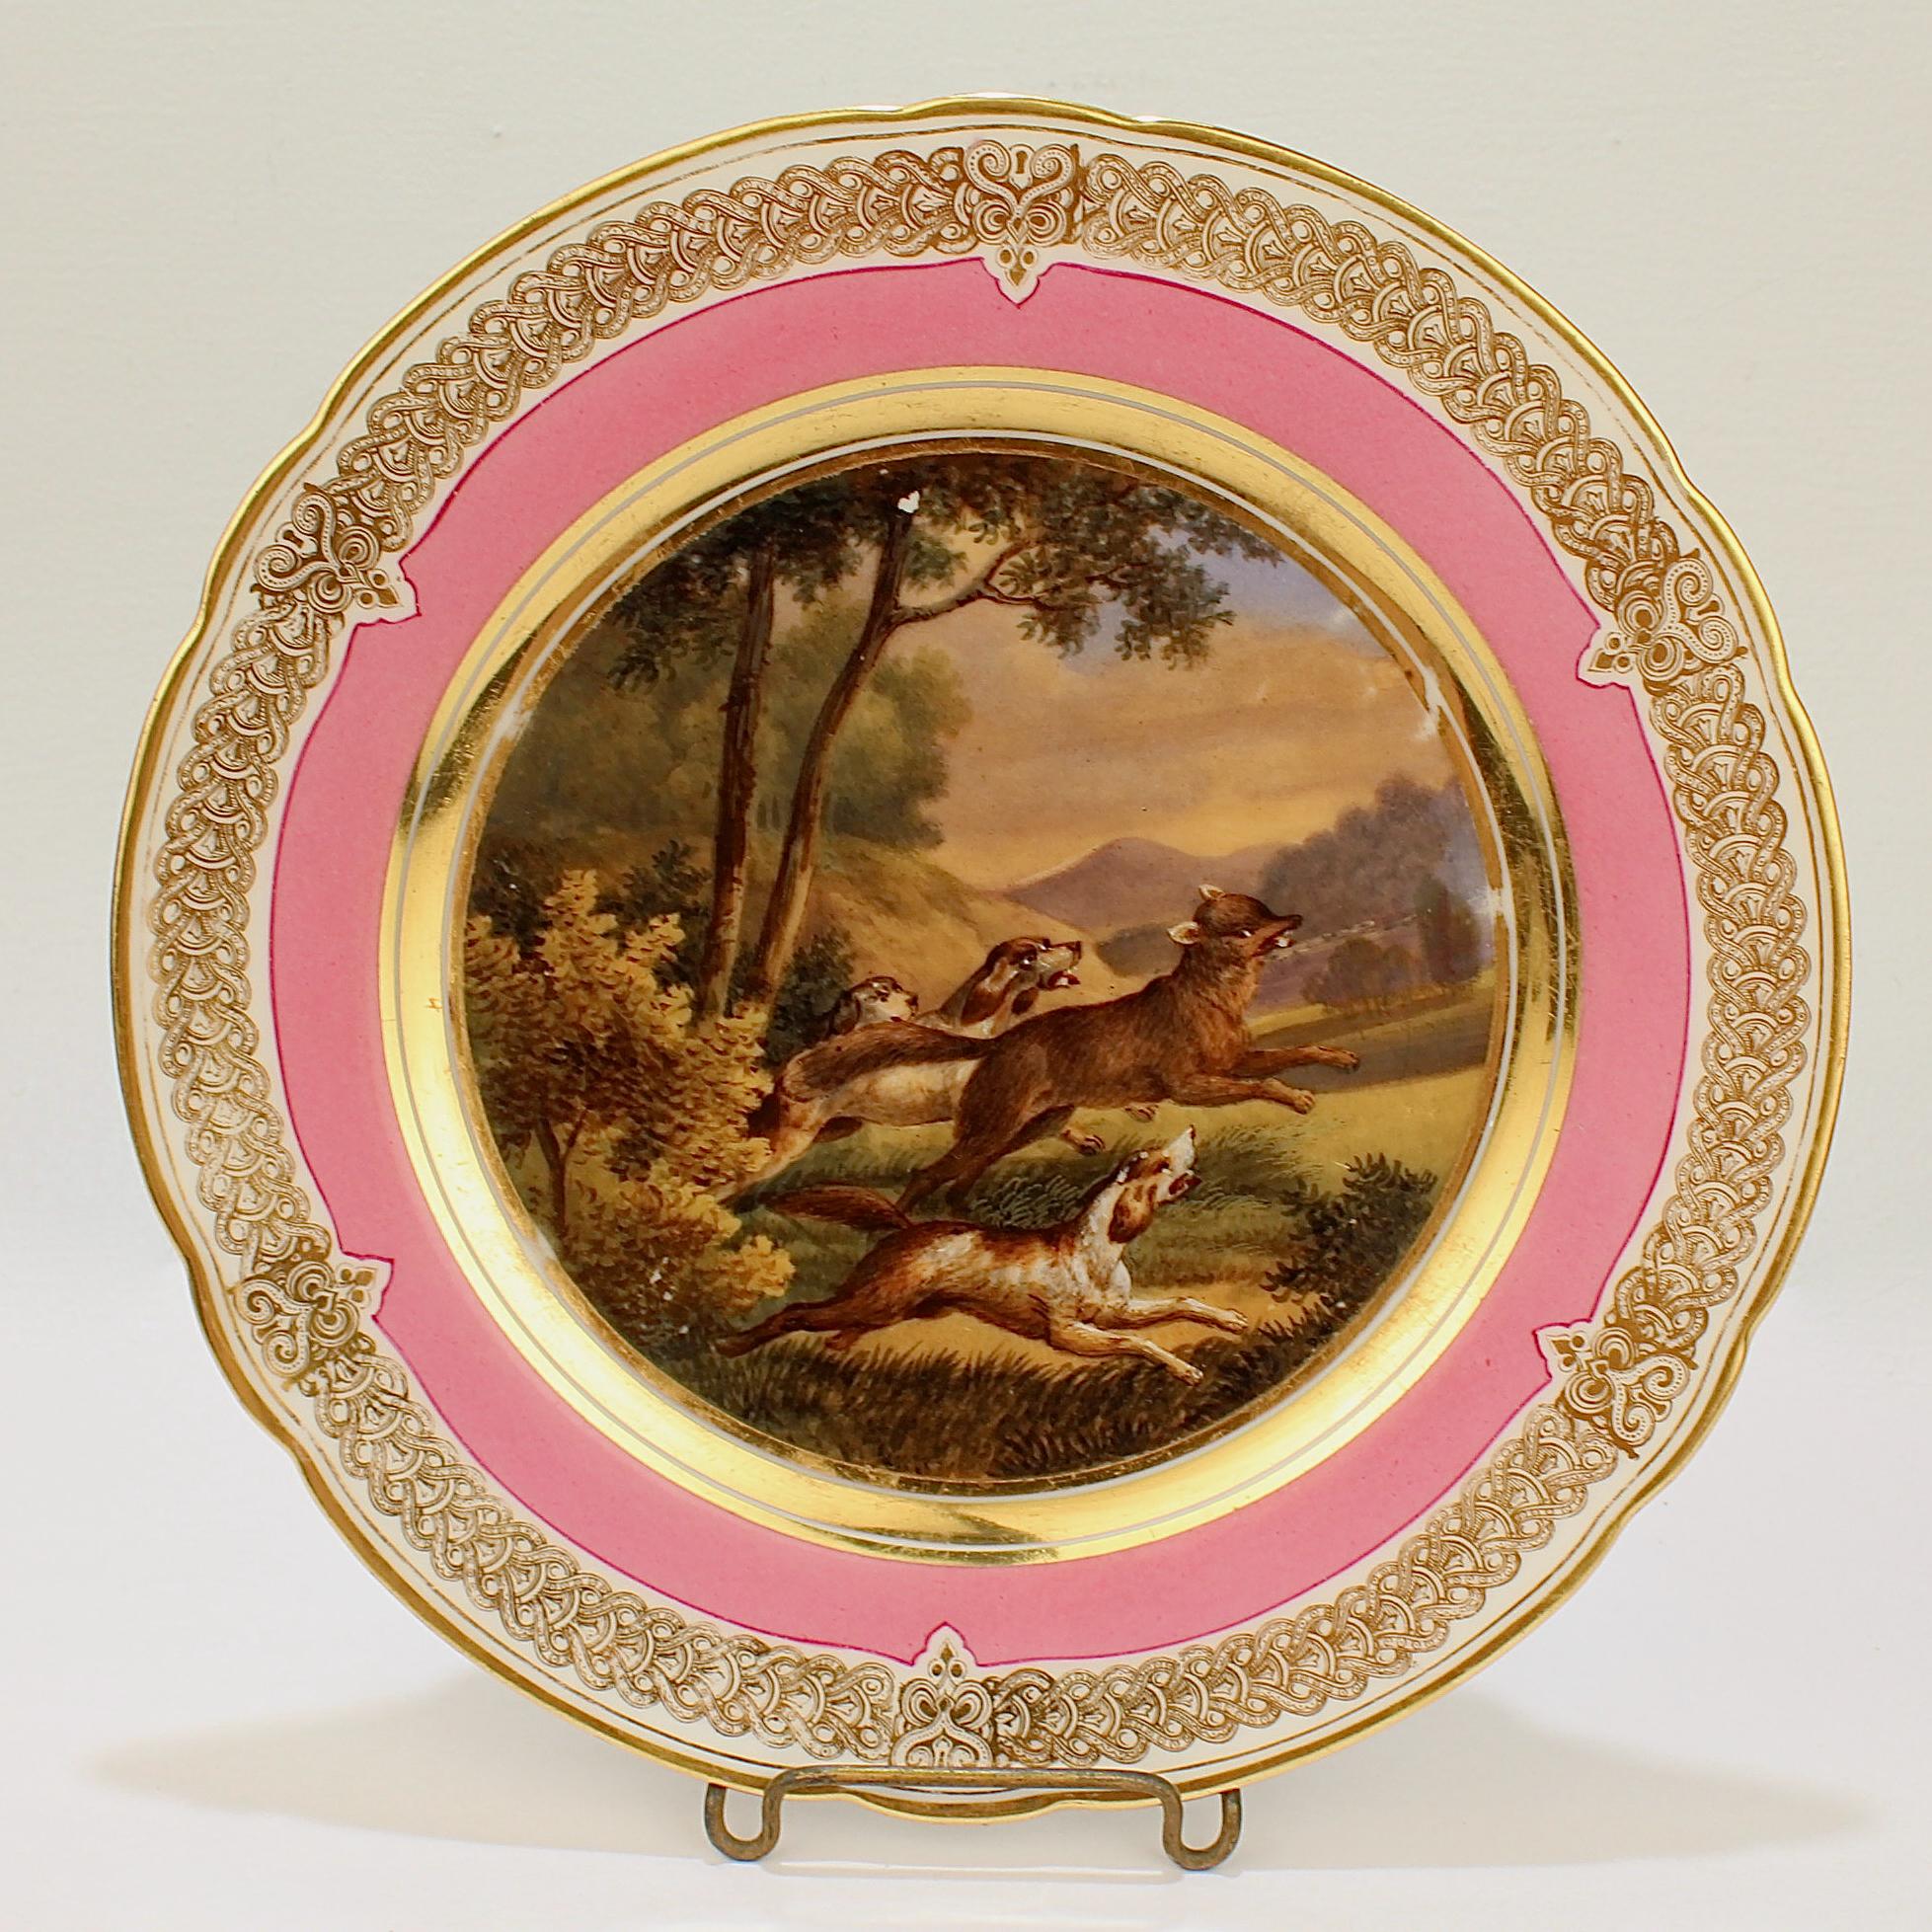 Ein wunderbarer antiker Pariser Porzellanteller aus dem 19. Jahrhundert.

Mit einer handgemalten Szene einer Fuchsjagd in einer idyllischen Landschaft mit einem fliehenden Fuchs und 3 Hunden bei der Verfolgung. 

Es hat einen rosafarbenen Rand